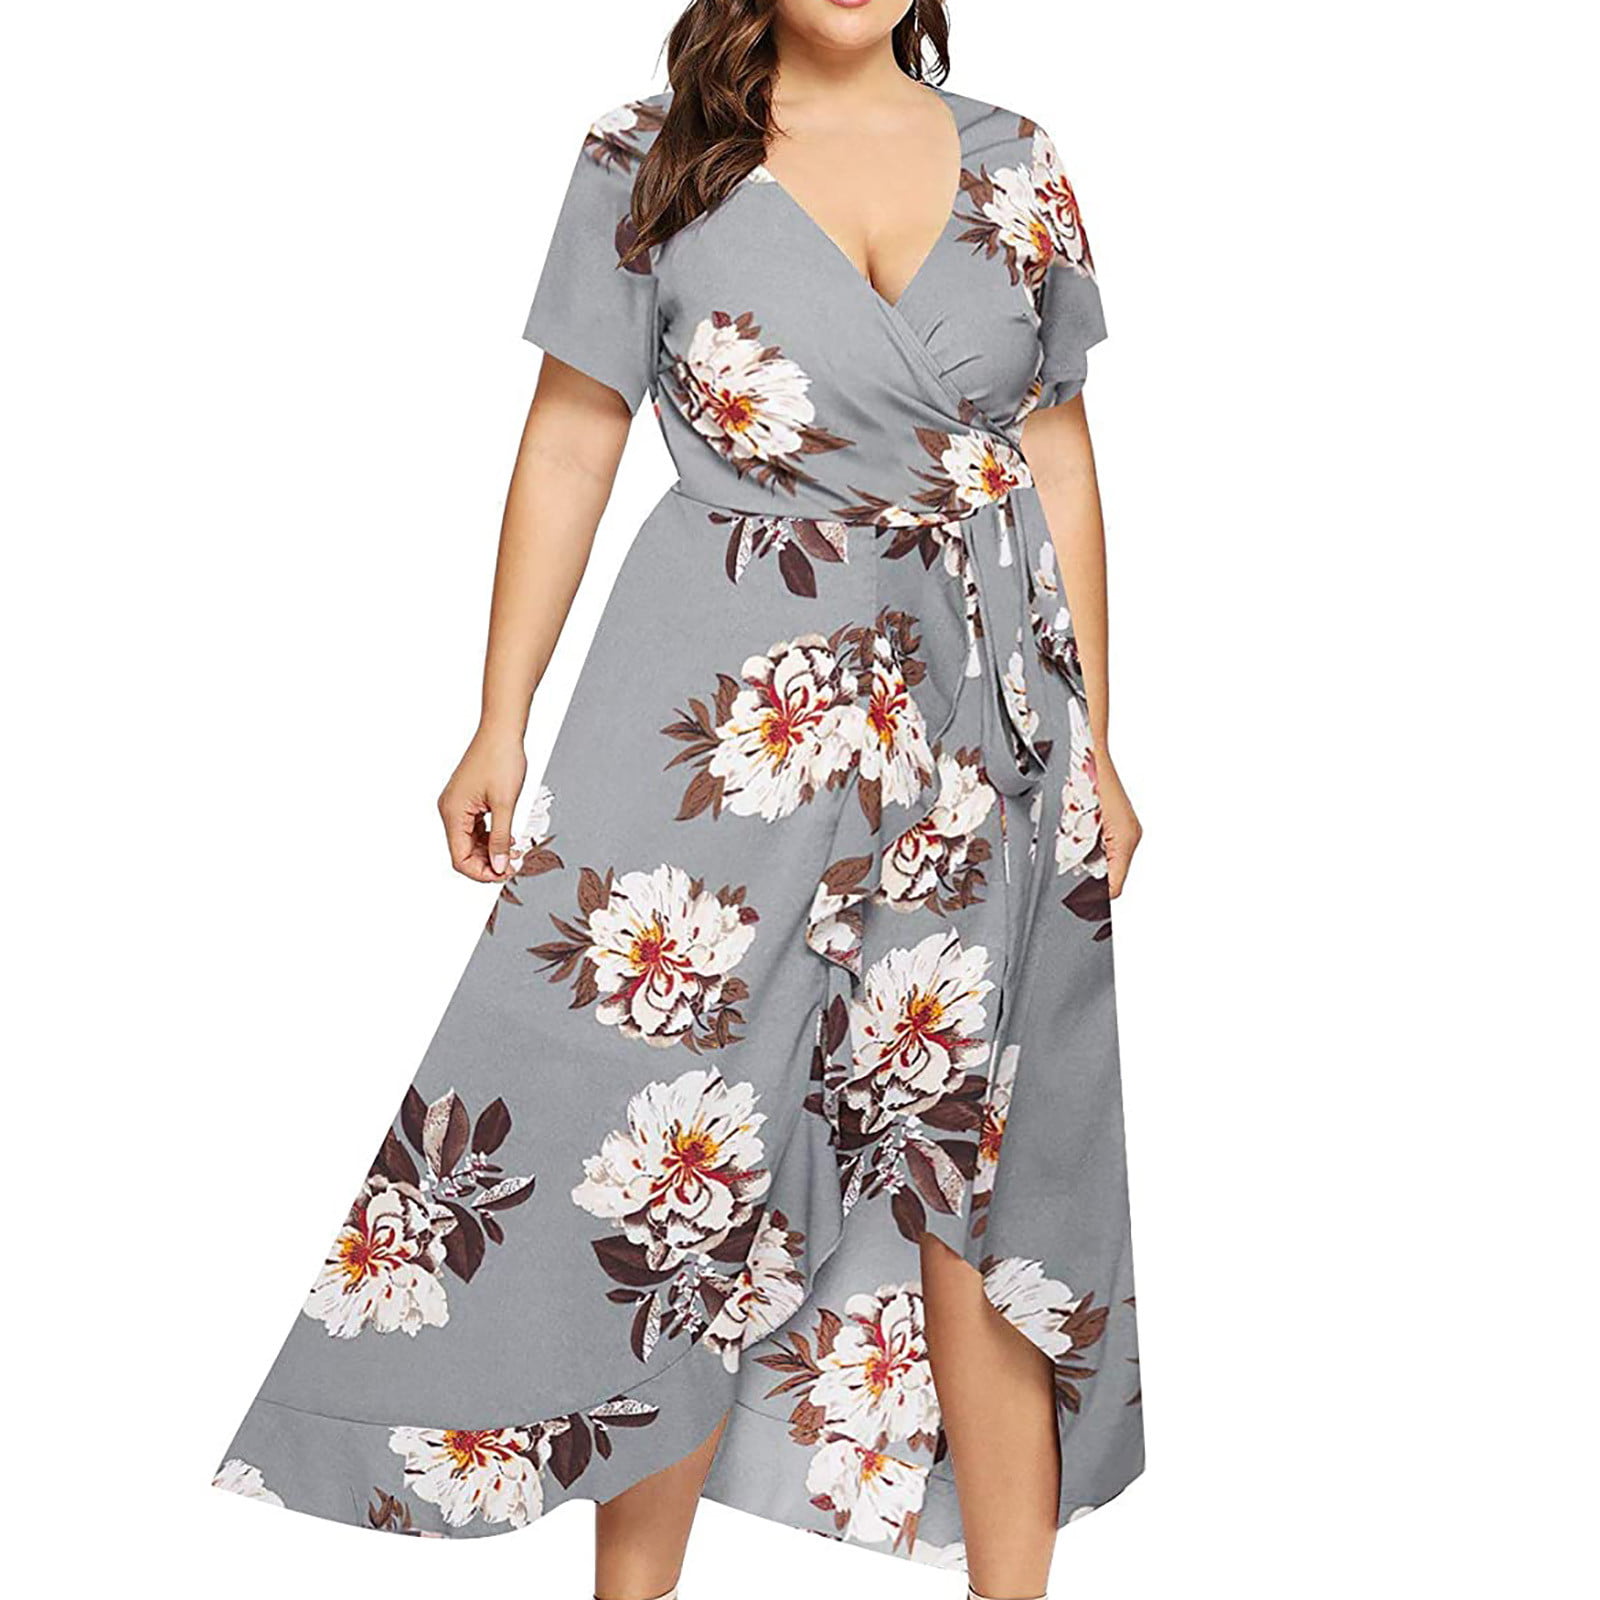 End-of-year 2021 - VIFUCZ Women Plus Size V-Neck Floral Print Short Boho Dress Party Dress -